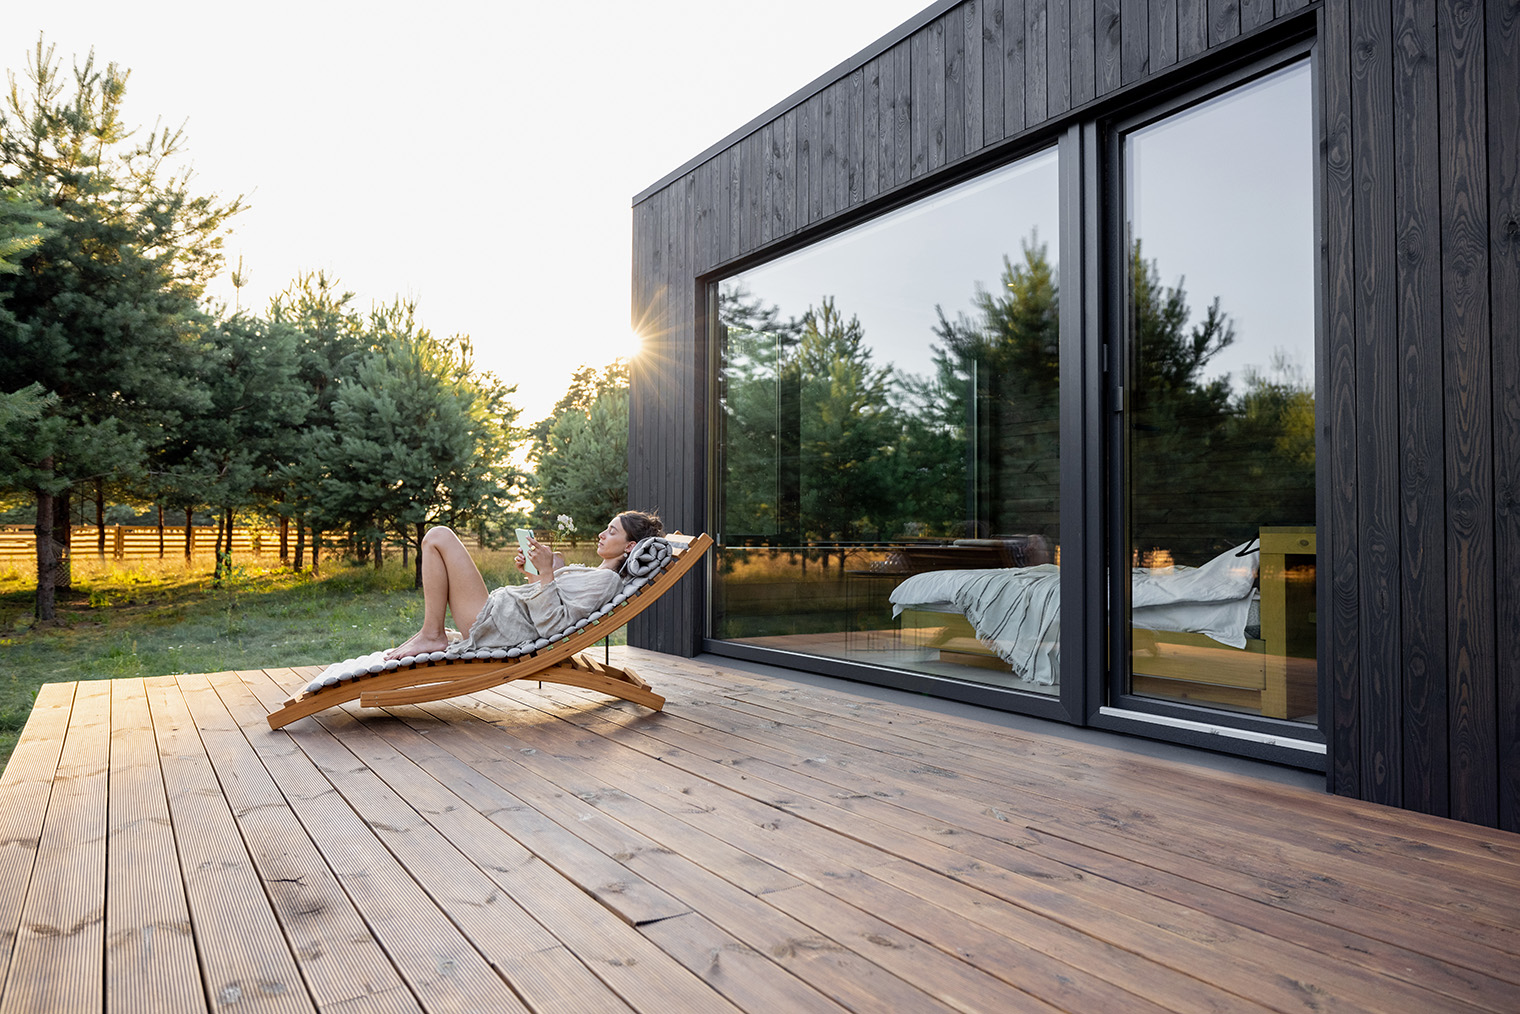 Пристроенная к дому открытая терраса. Фотография: Artazum / Shutterstock